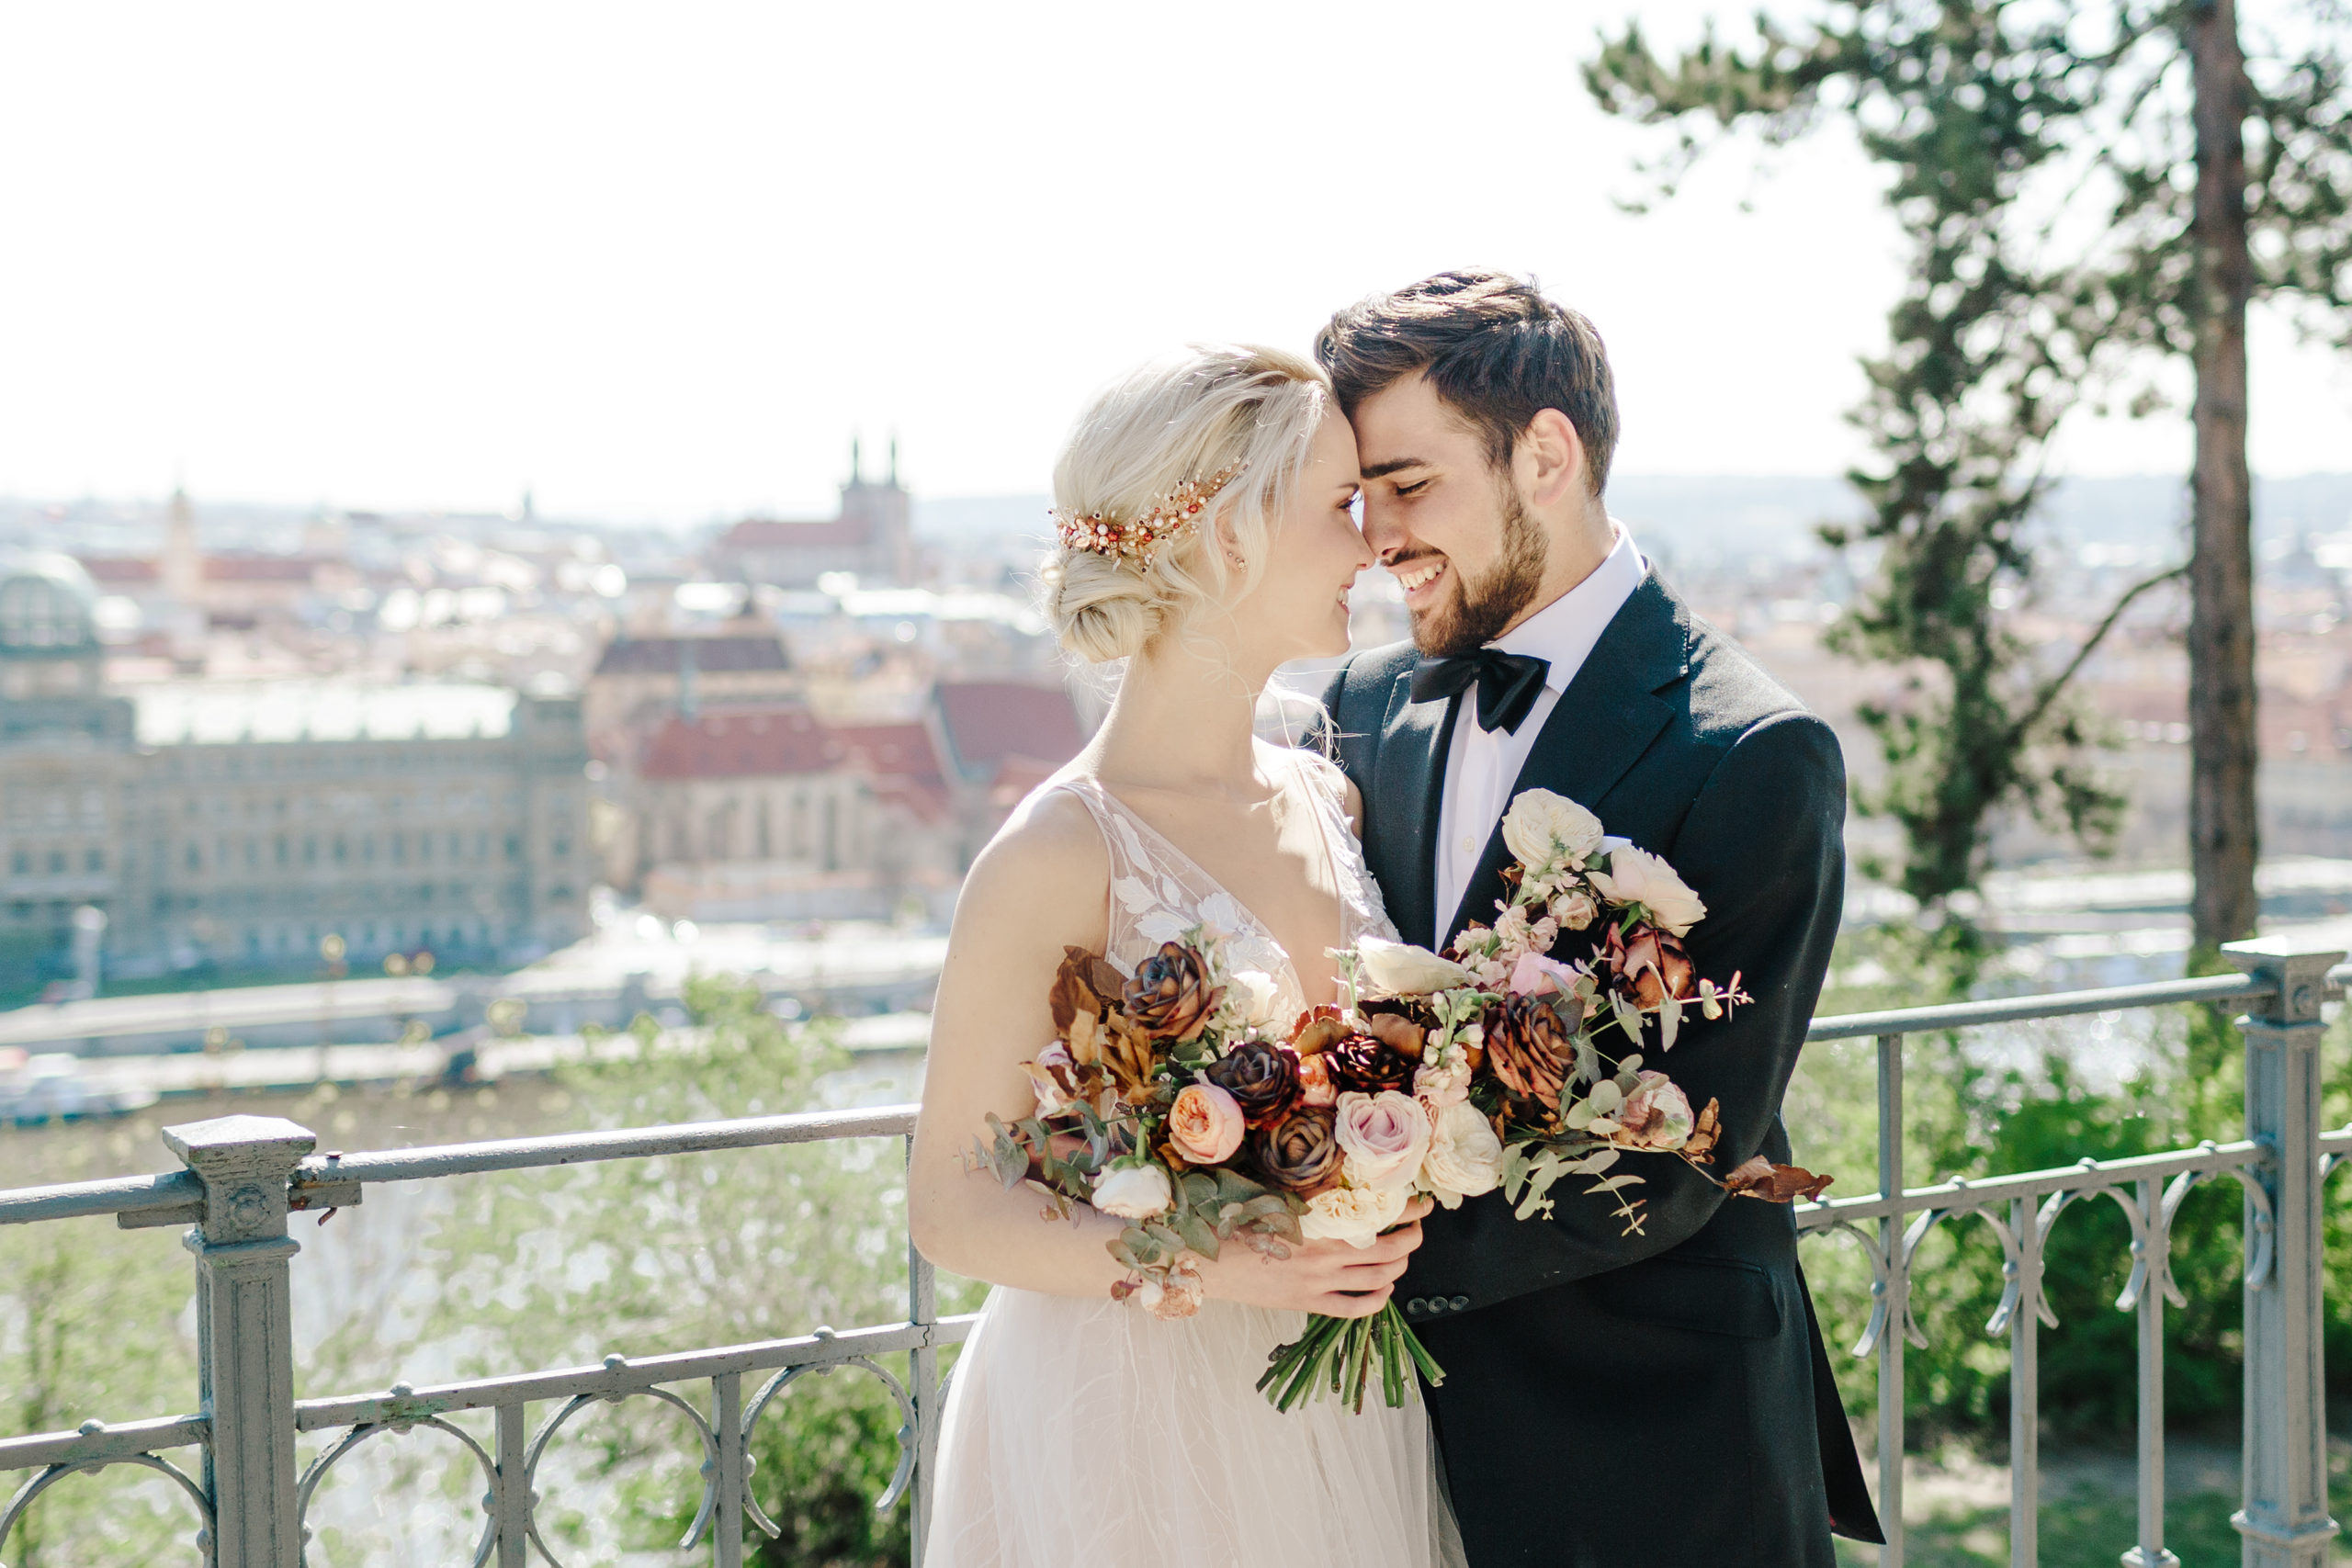 Letensky Chateau - Weddings in Prague - Julie May